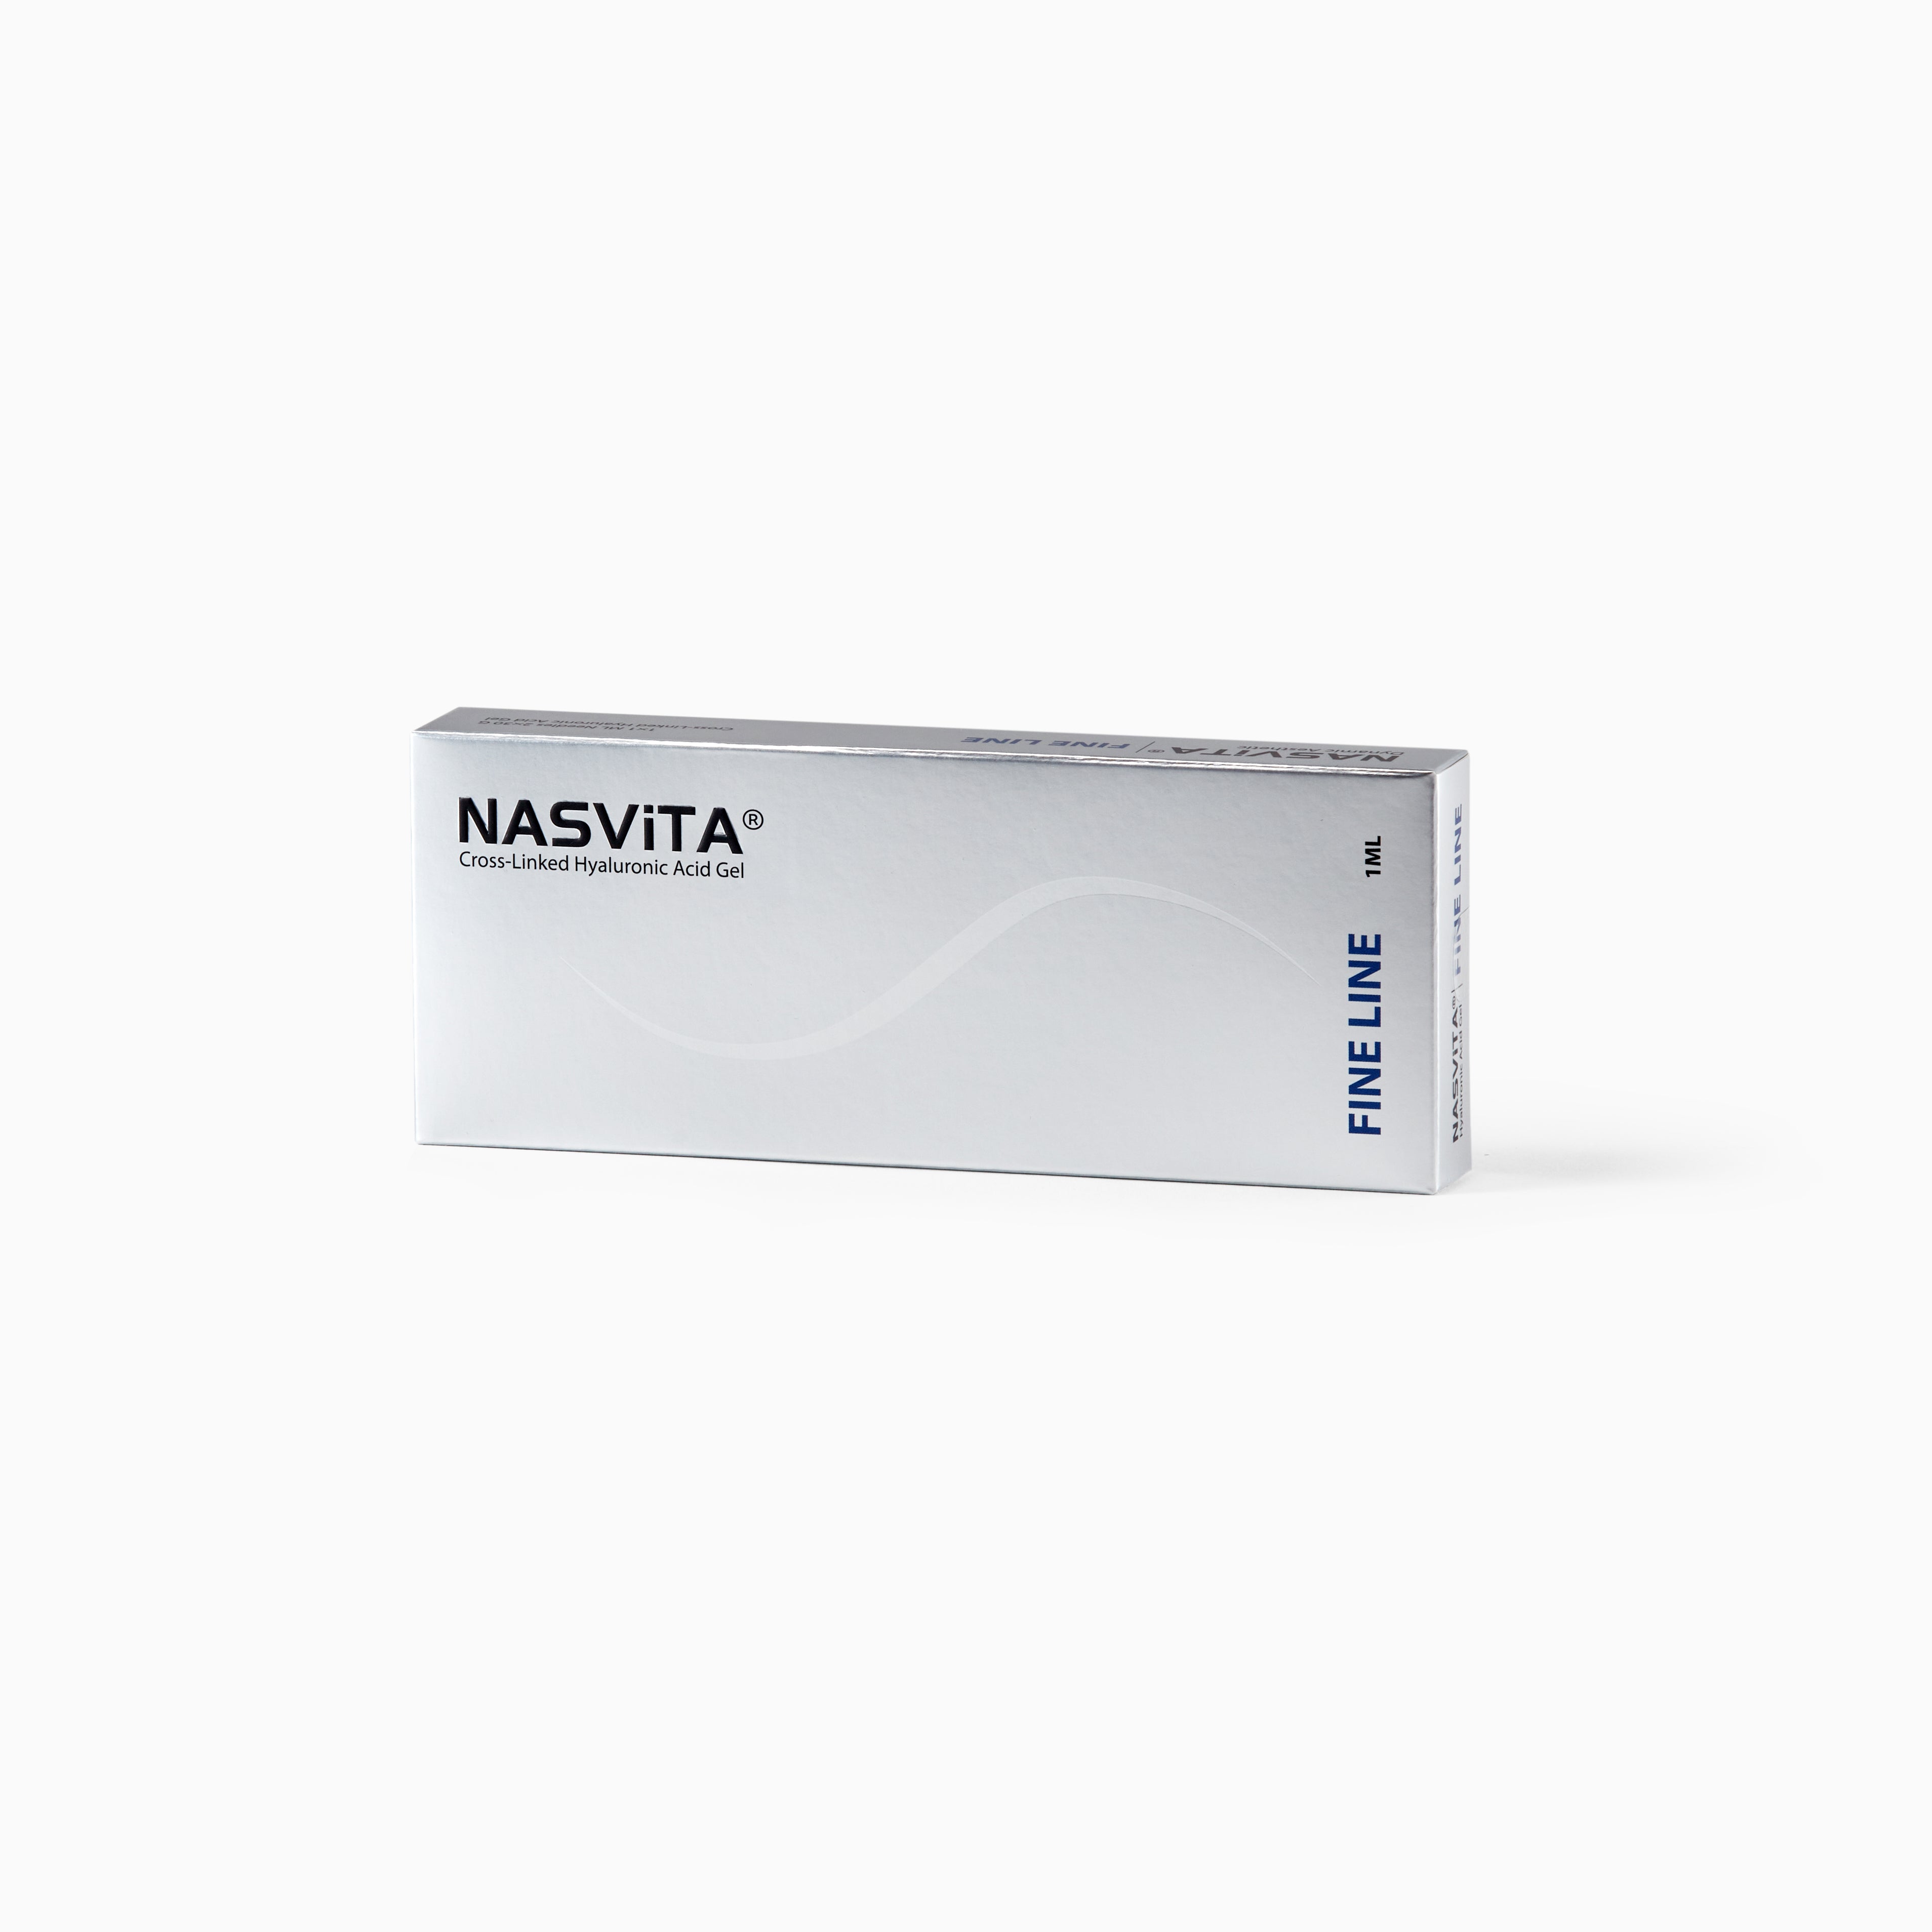 NASViTA FINE LINE Hyaluronic Acid Filler for Under Eye Bags 1ML